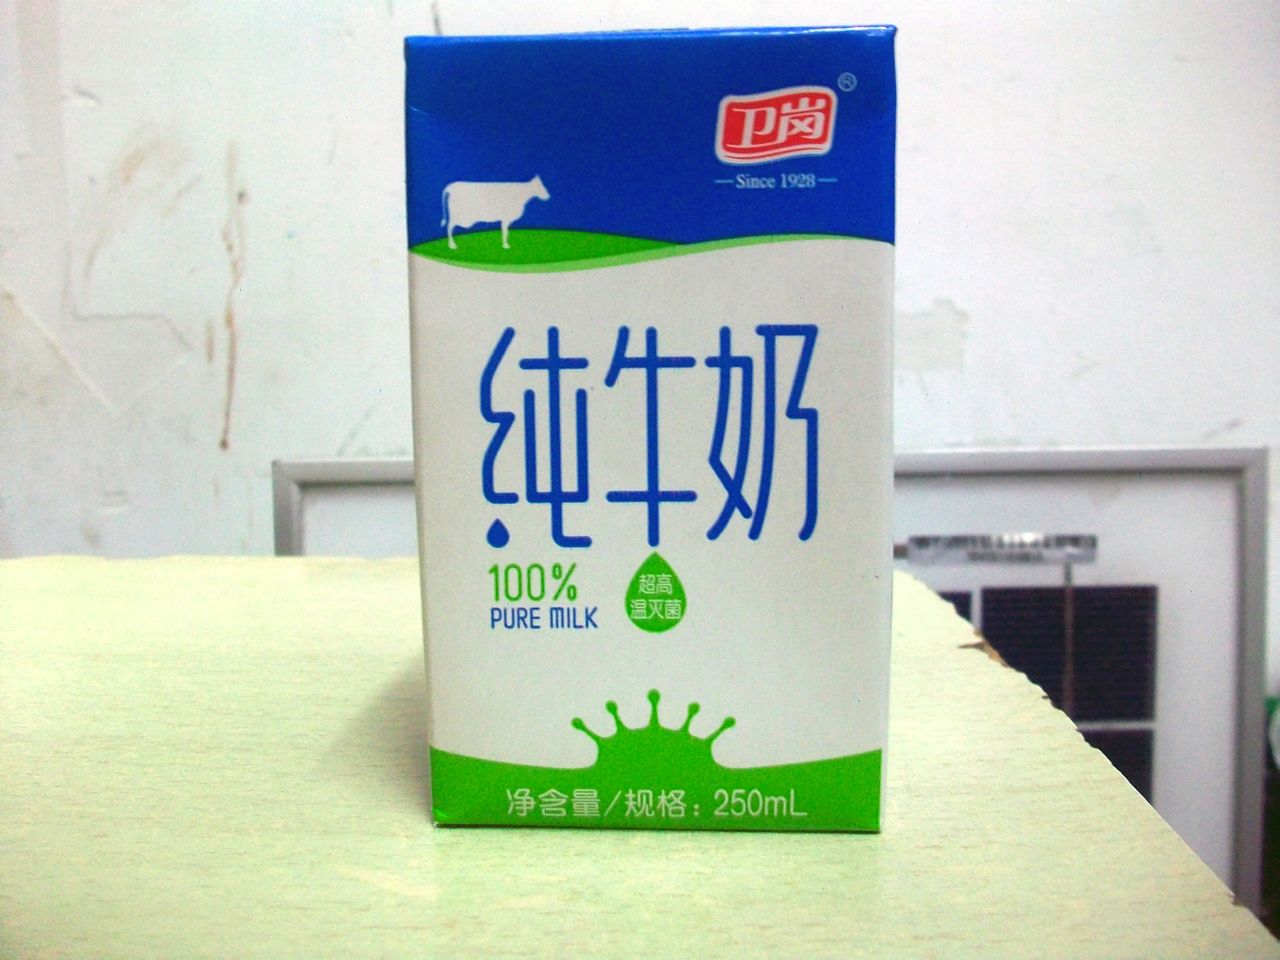 衛崗牛奶產品